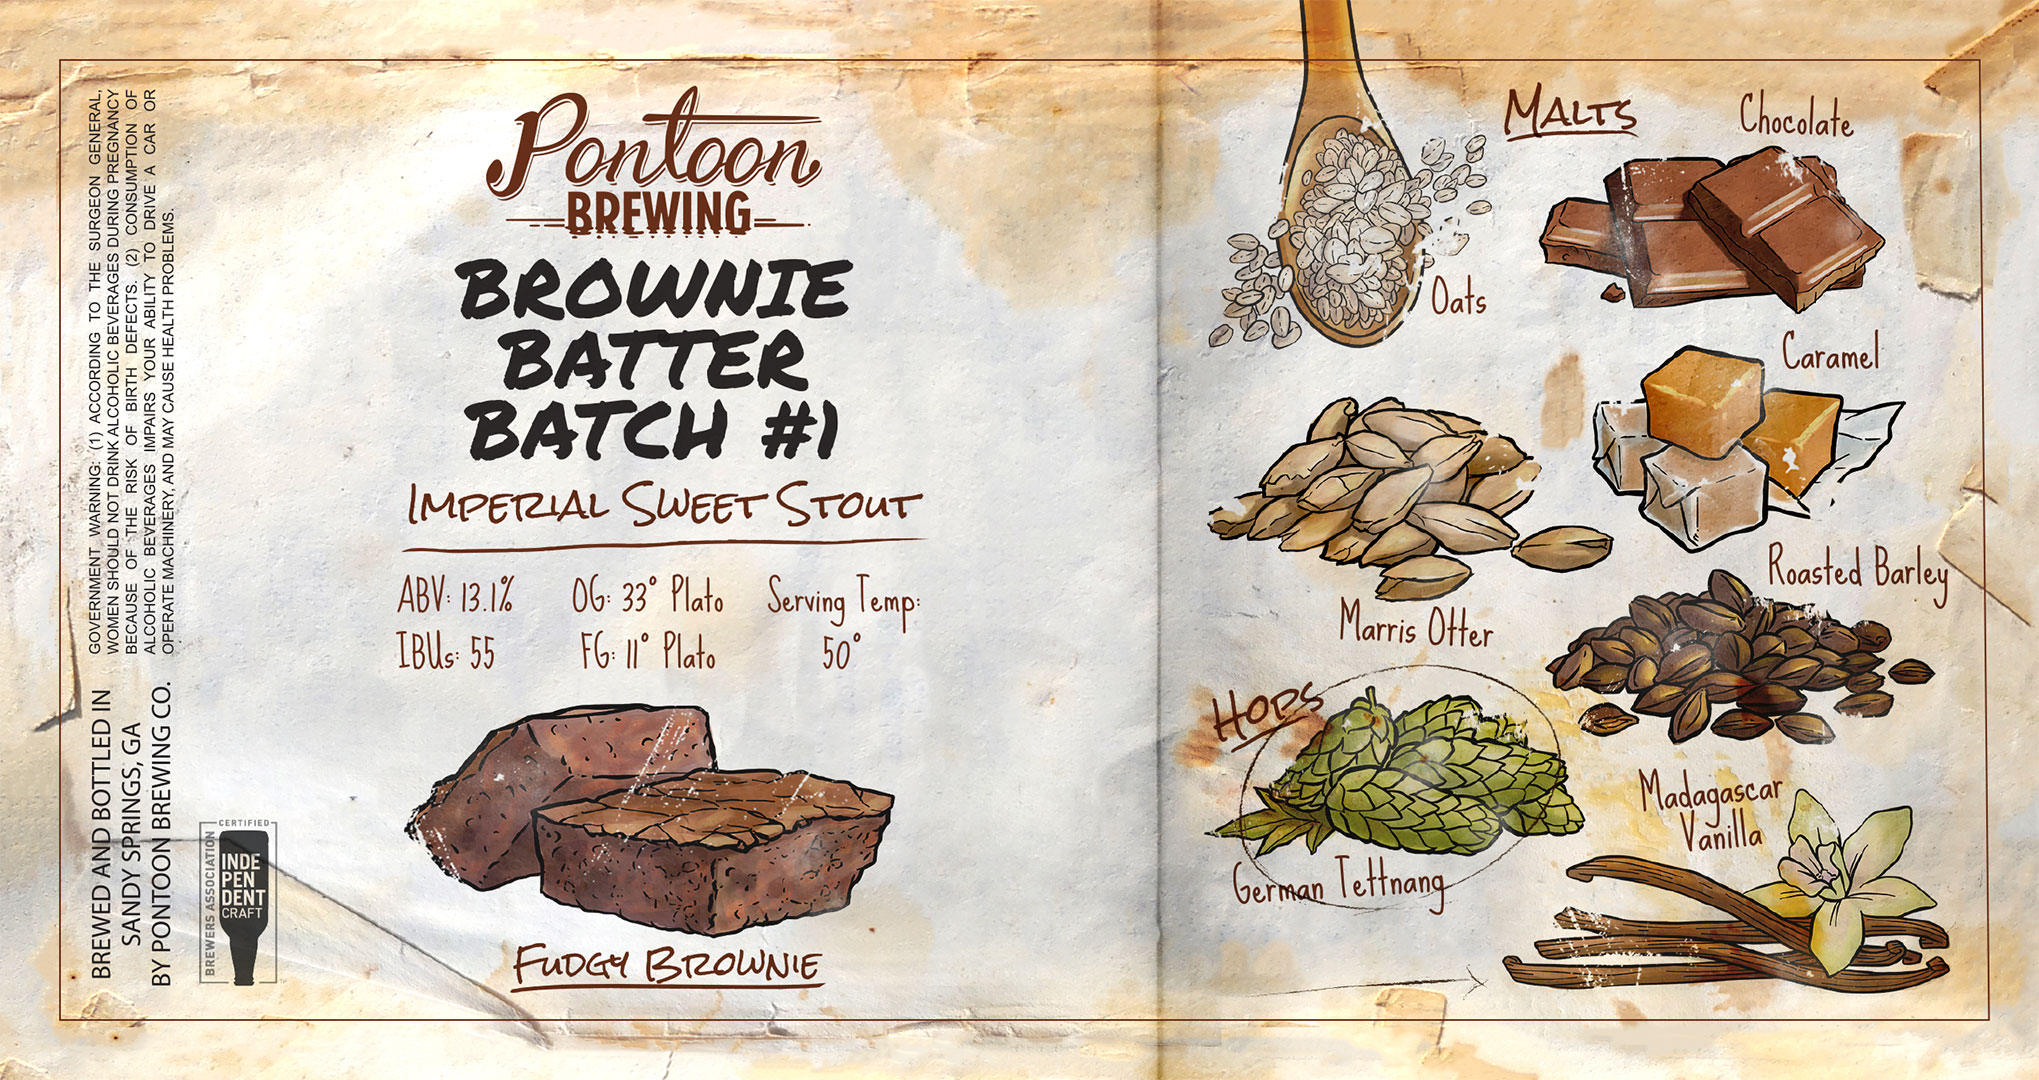 Pontoon Brewing Brownie Batter